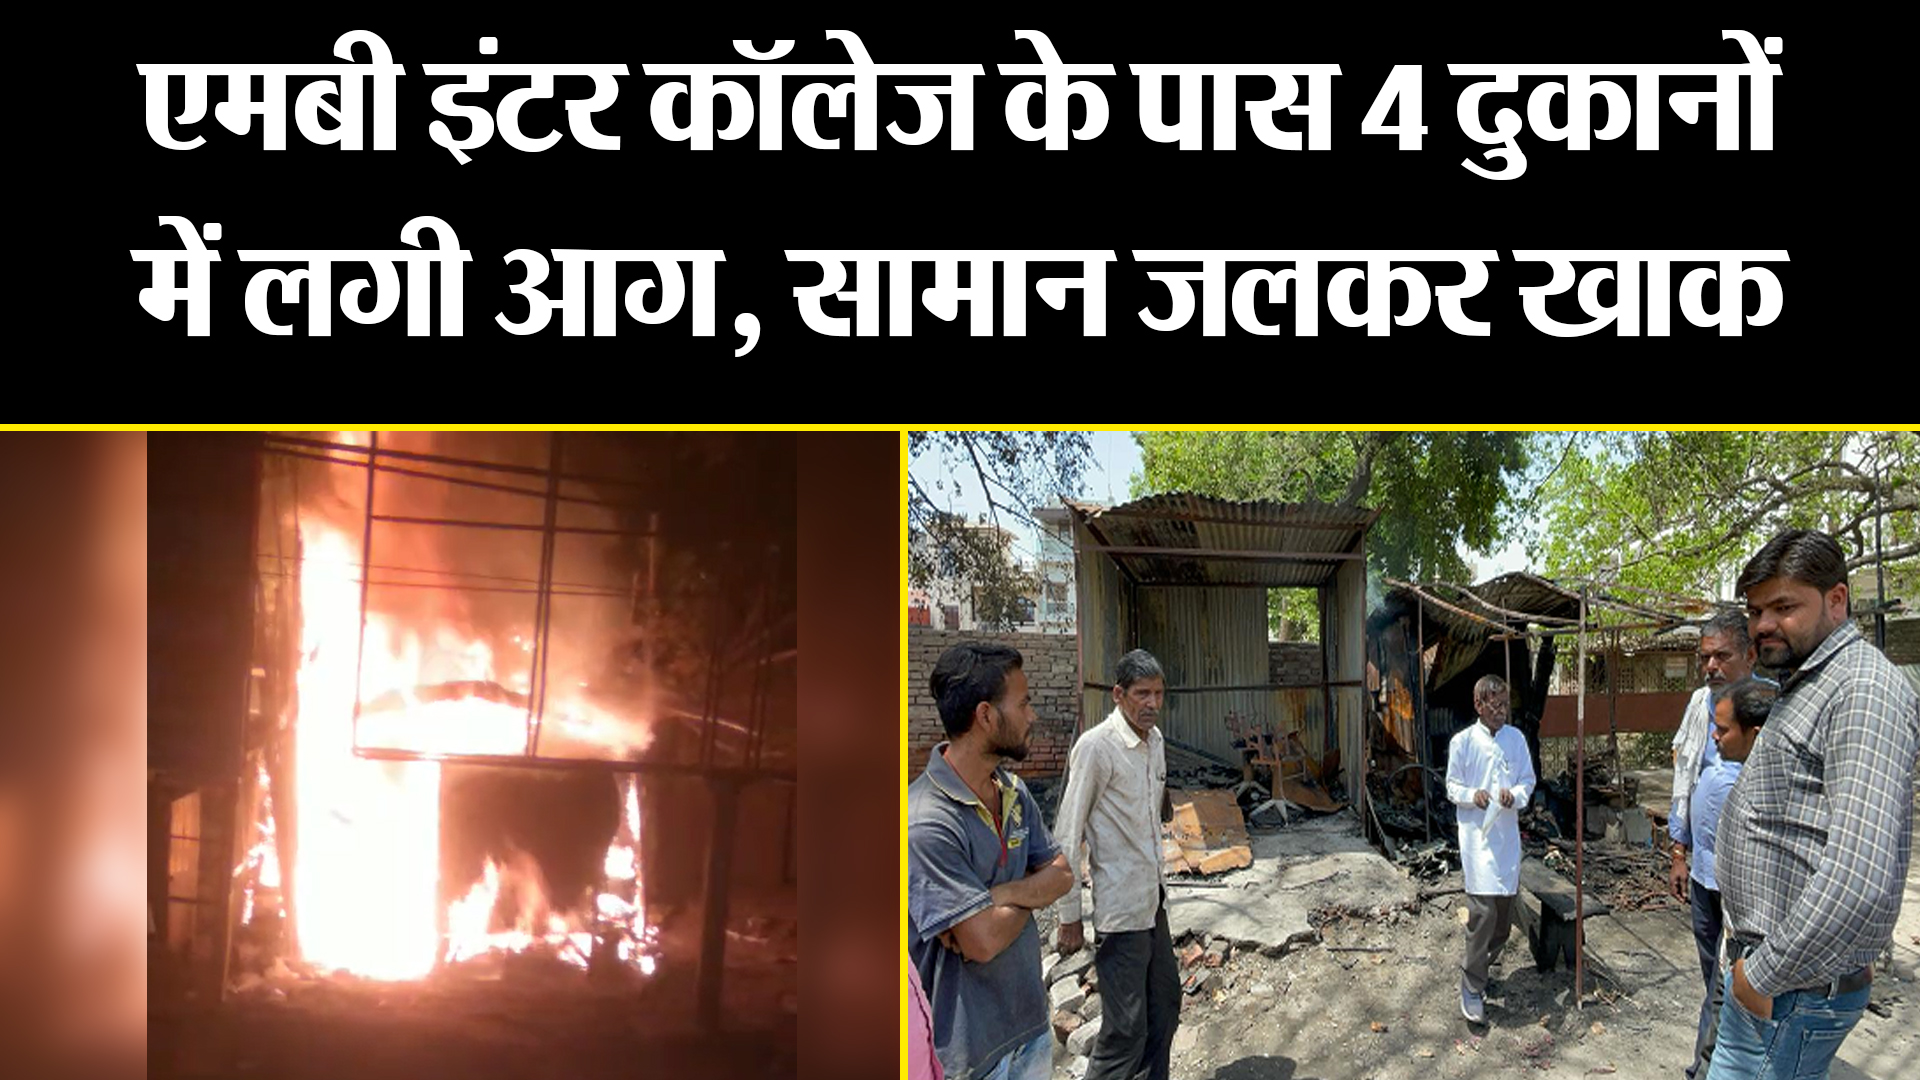 बरेली: एमबी इंटर कॉलेज के पास 4 दुकानों में लगी आग, सामान जलकर खाक